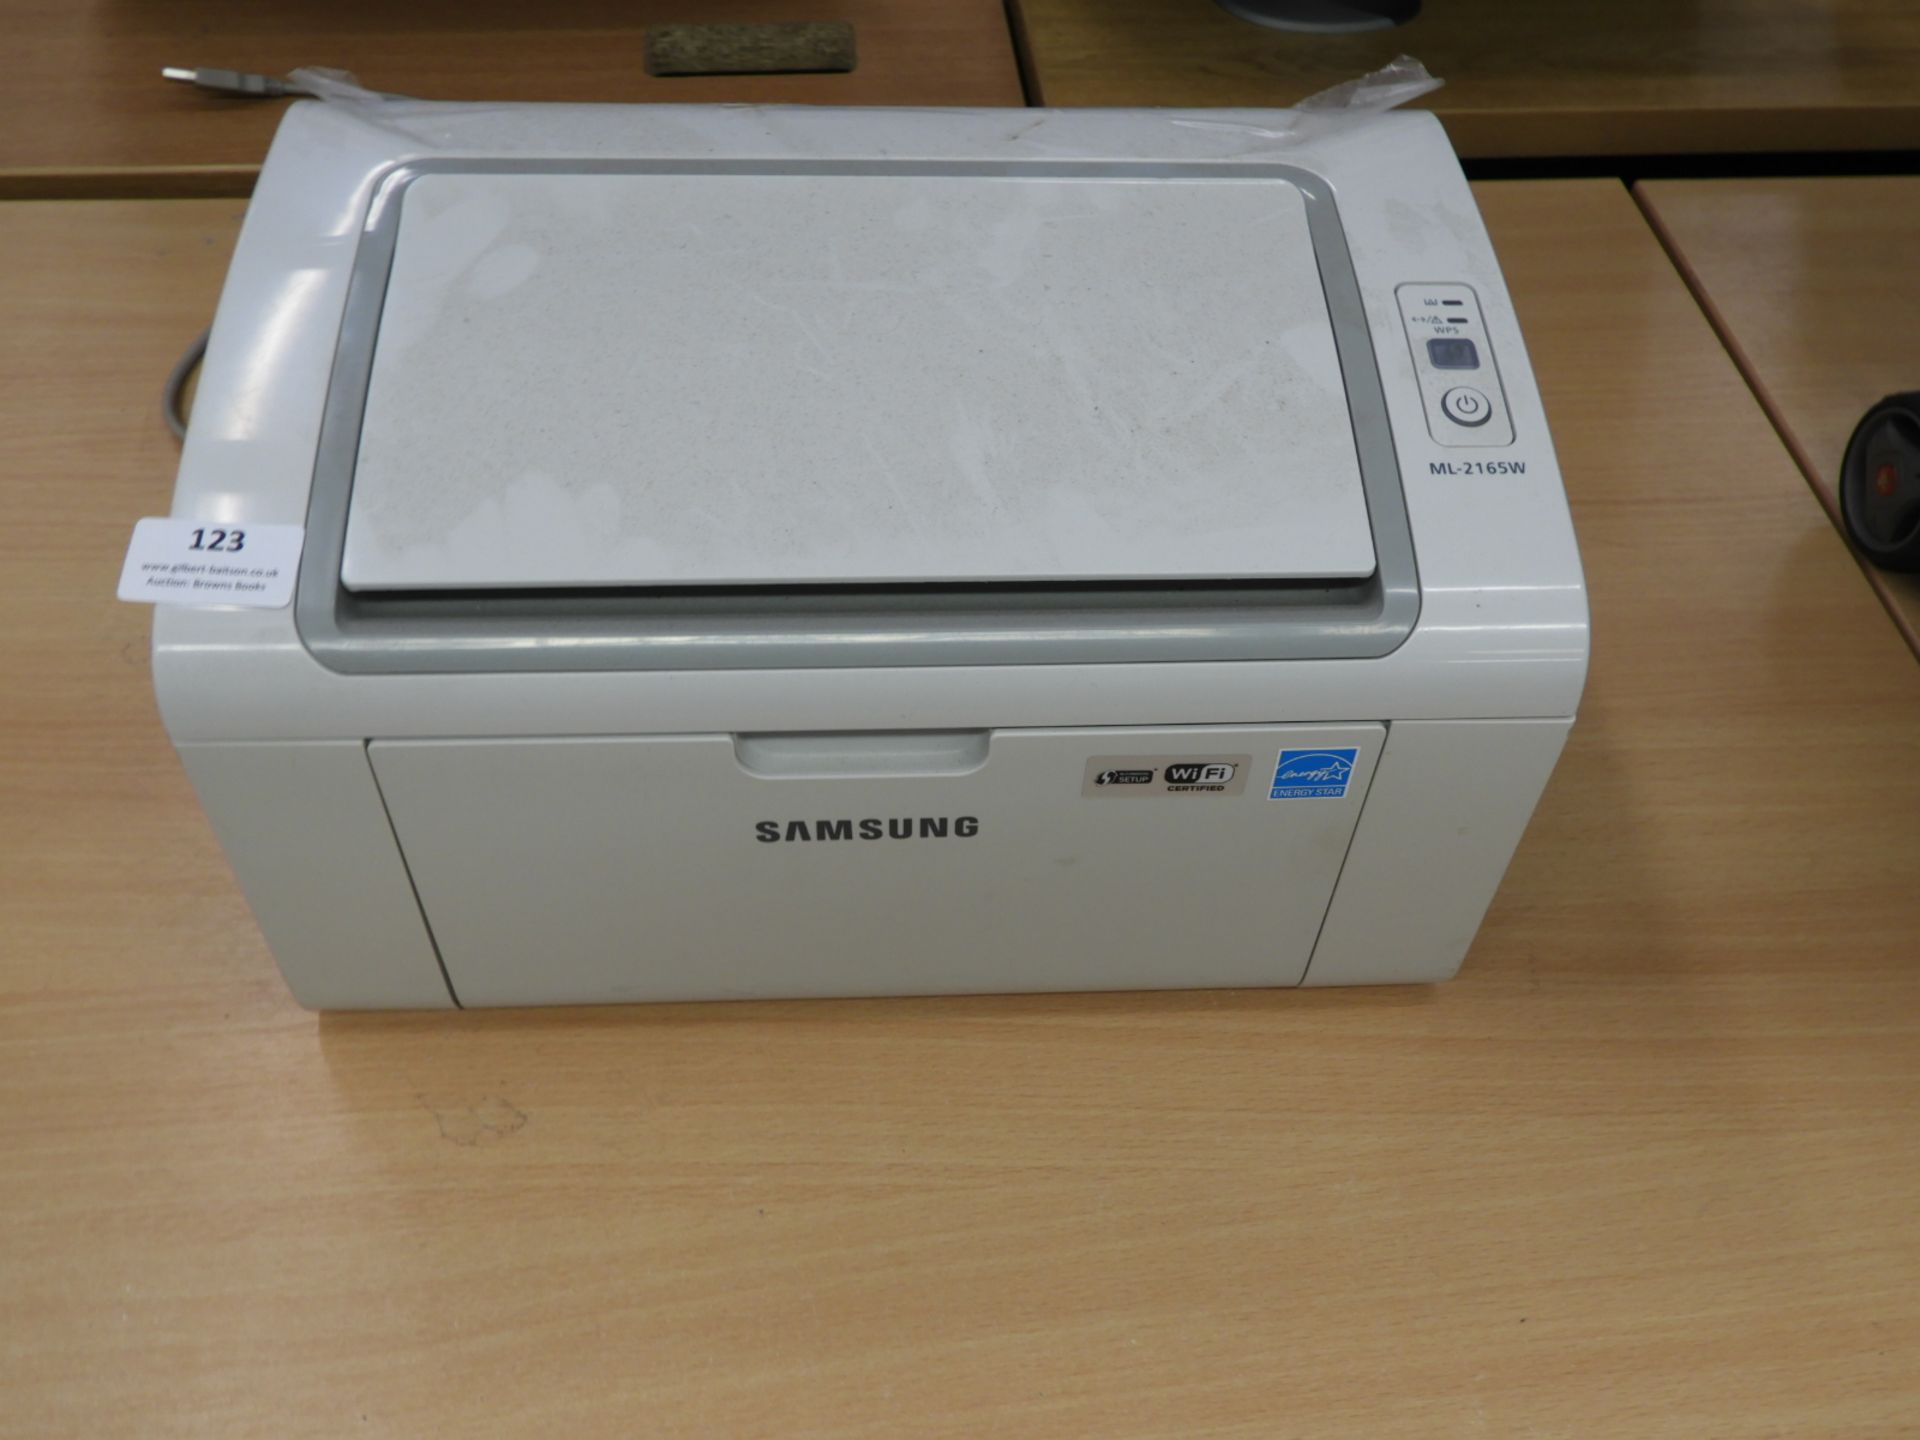 Samsung ML2165W Laser Printer